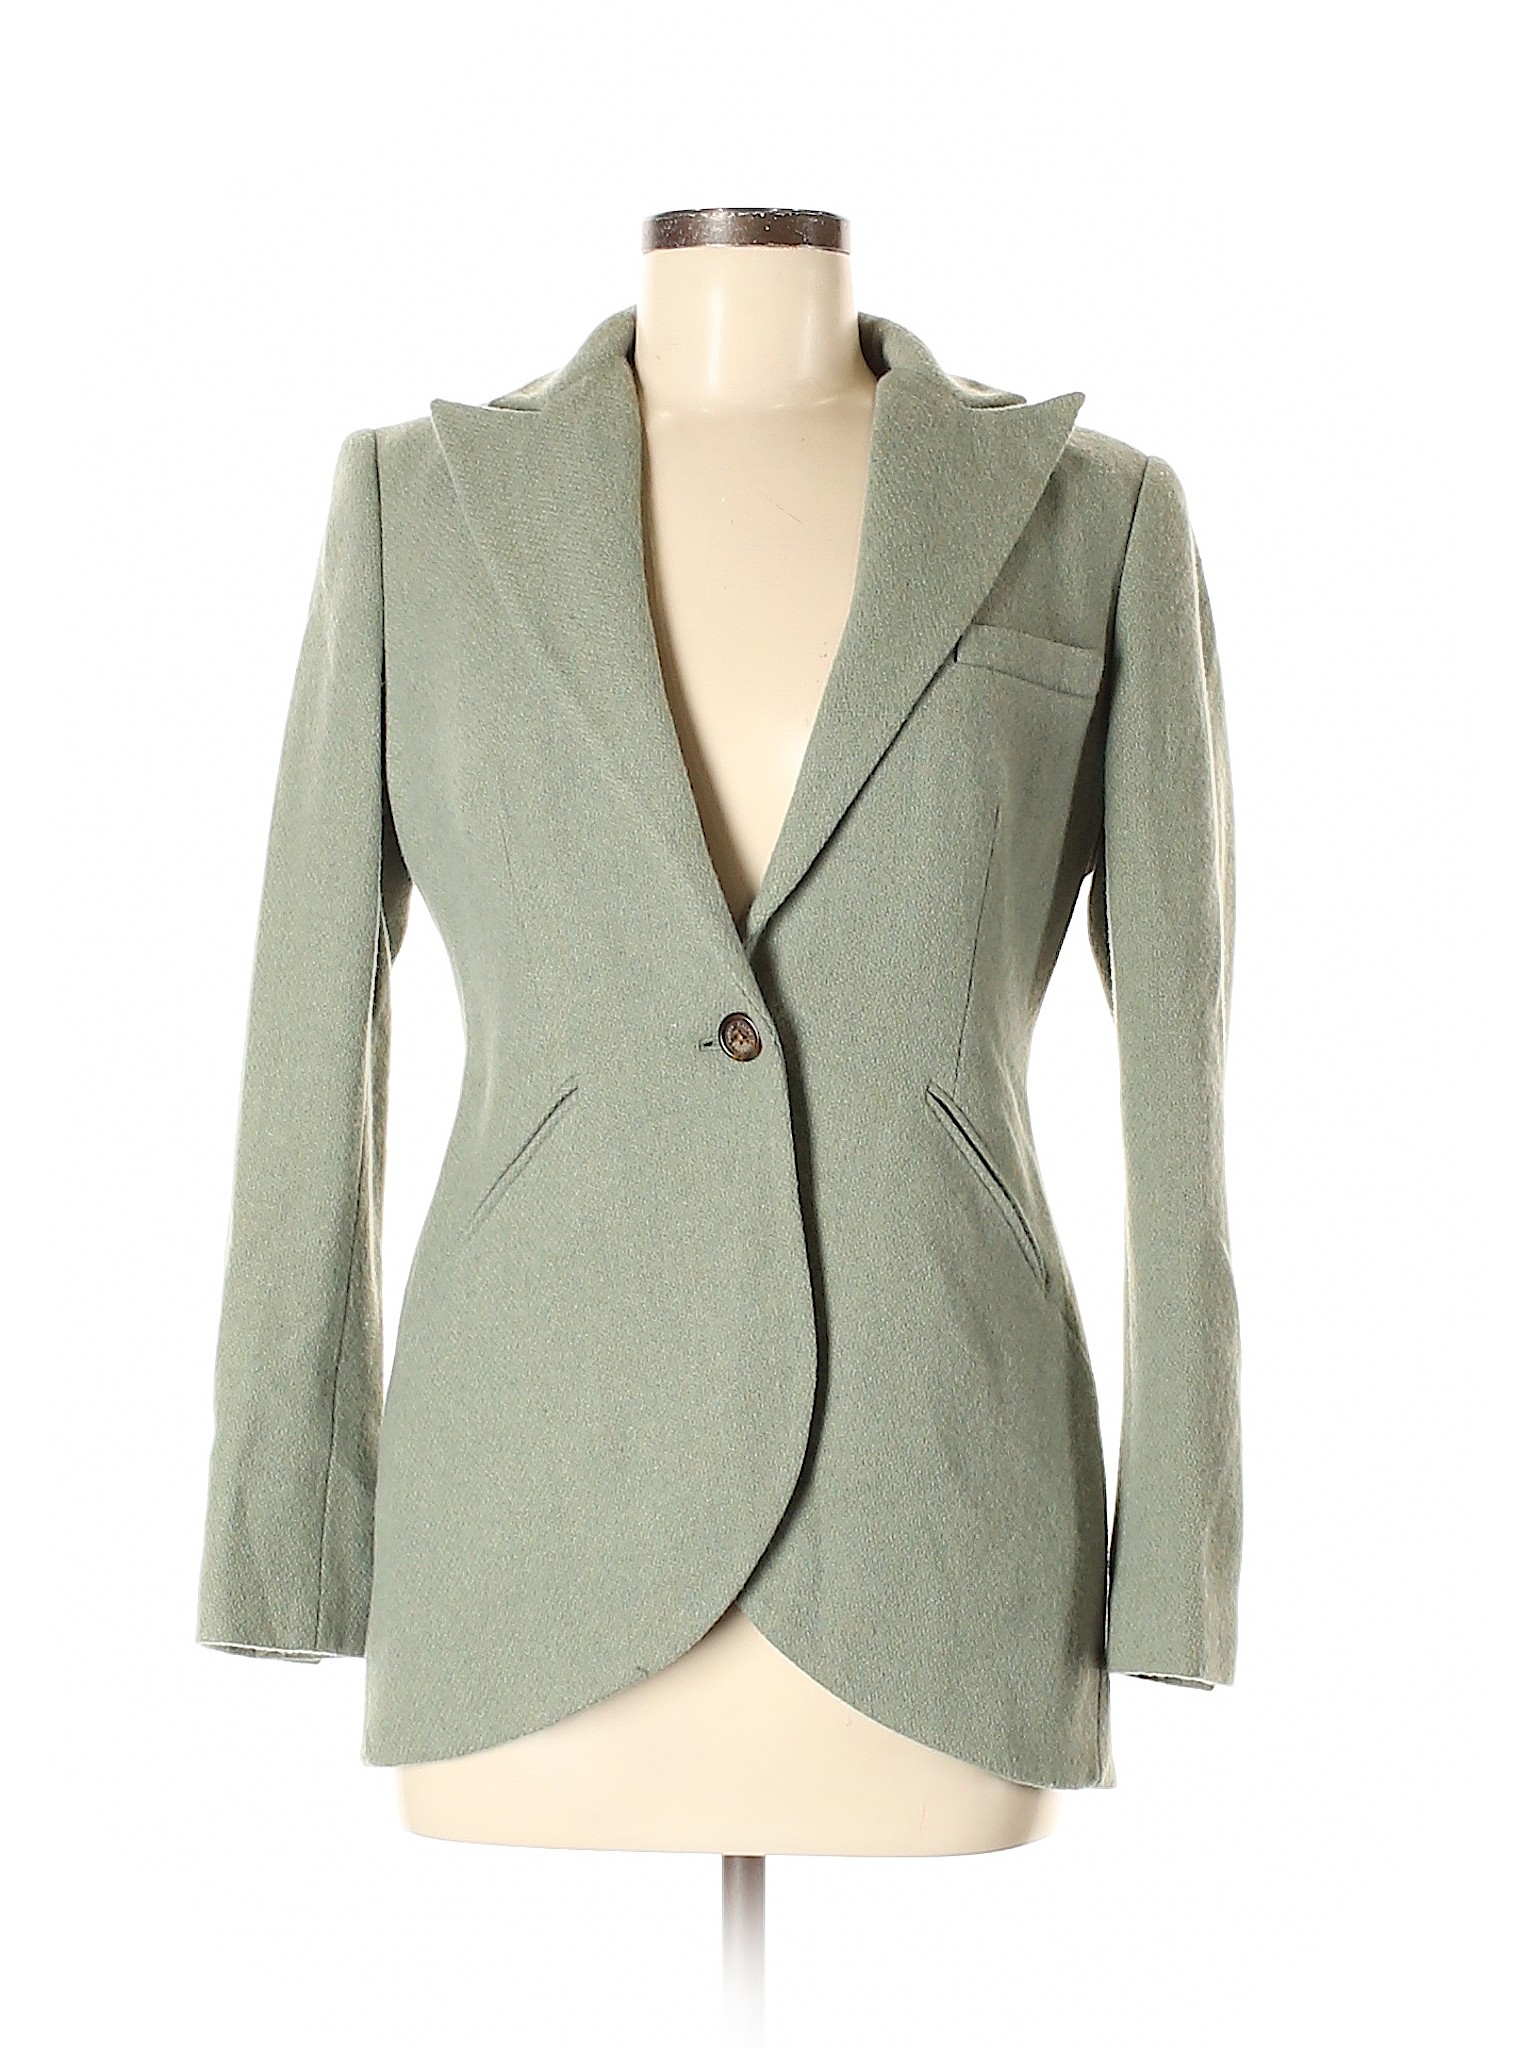 Lauren By Ralph Lauren Women Green Wool Blazer 8 Petite | eBay